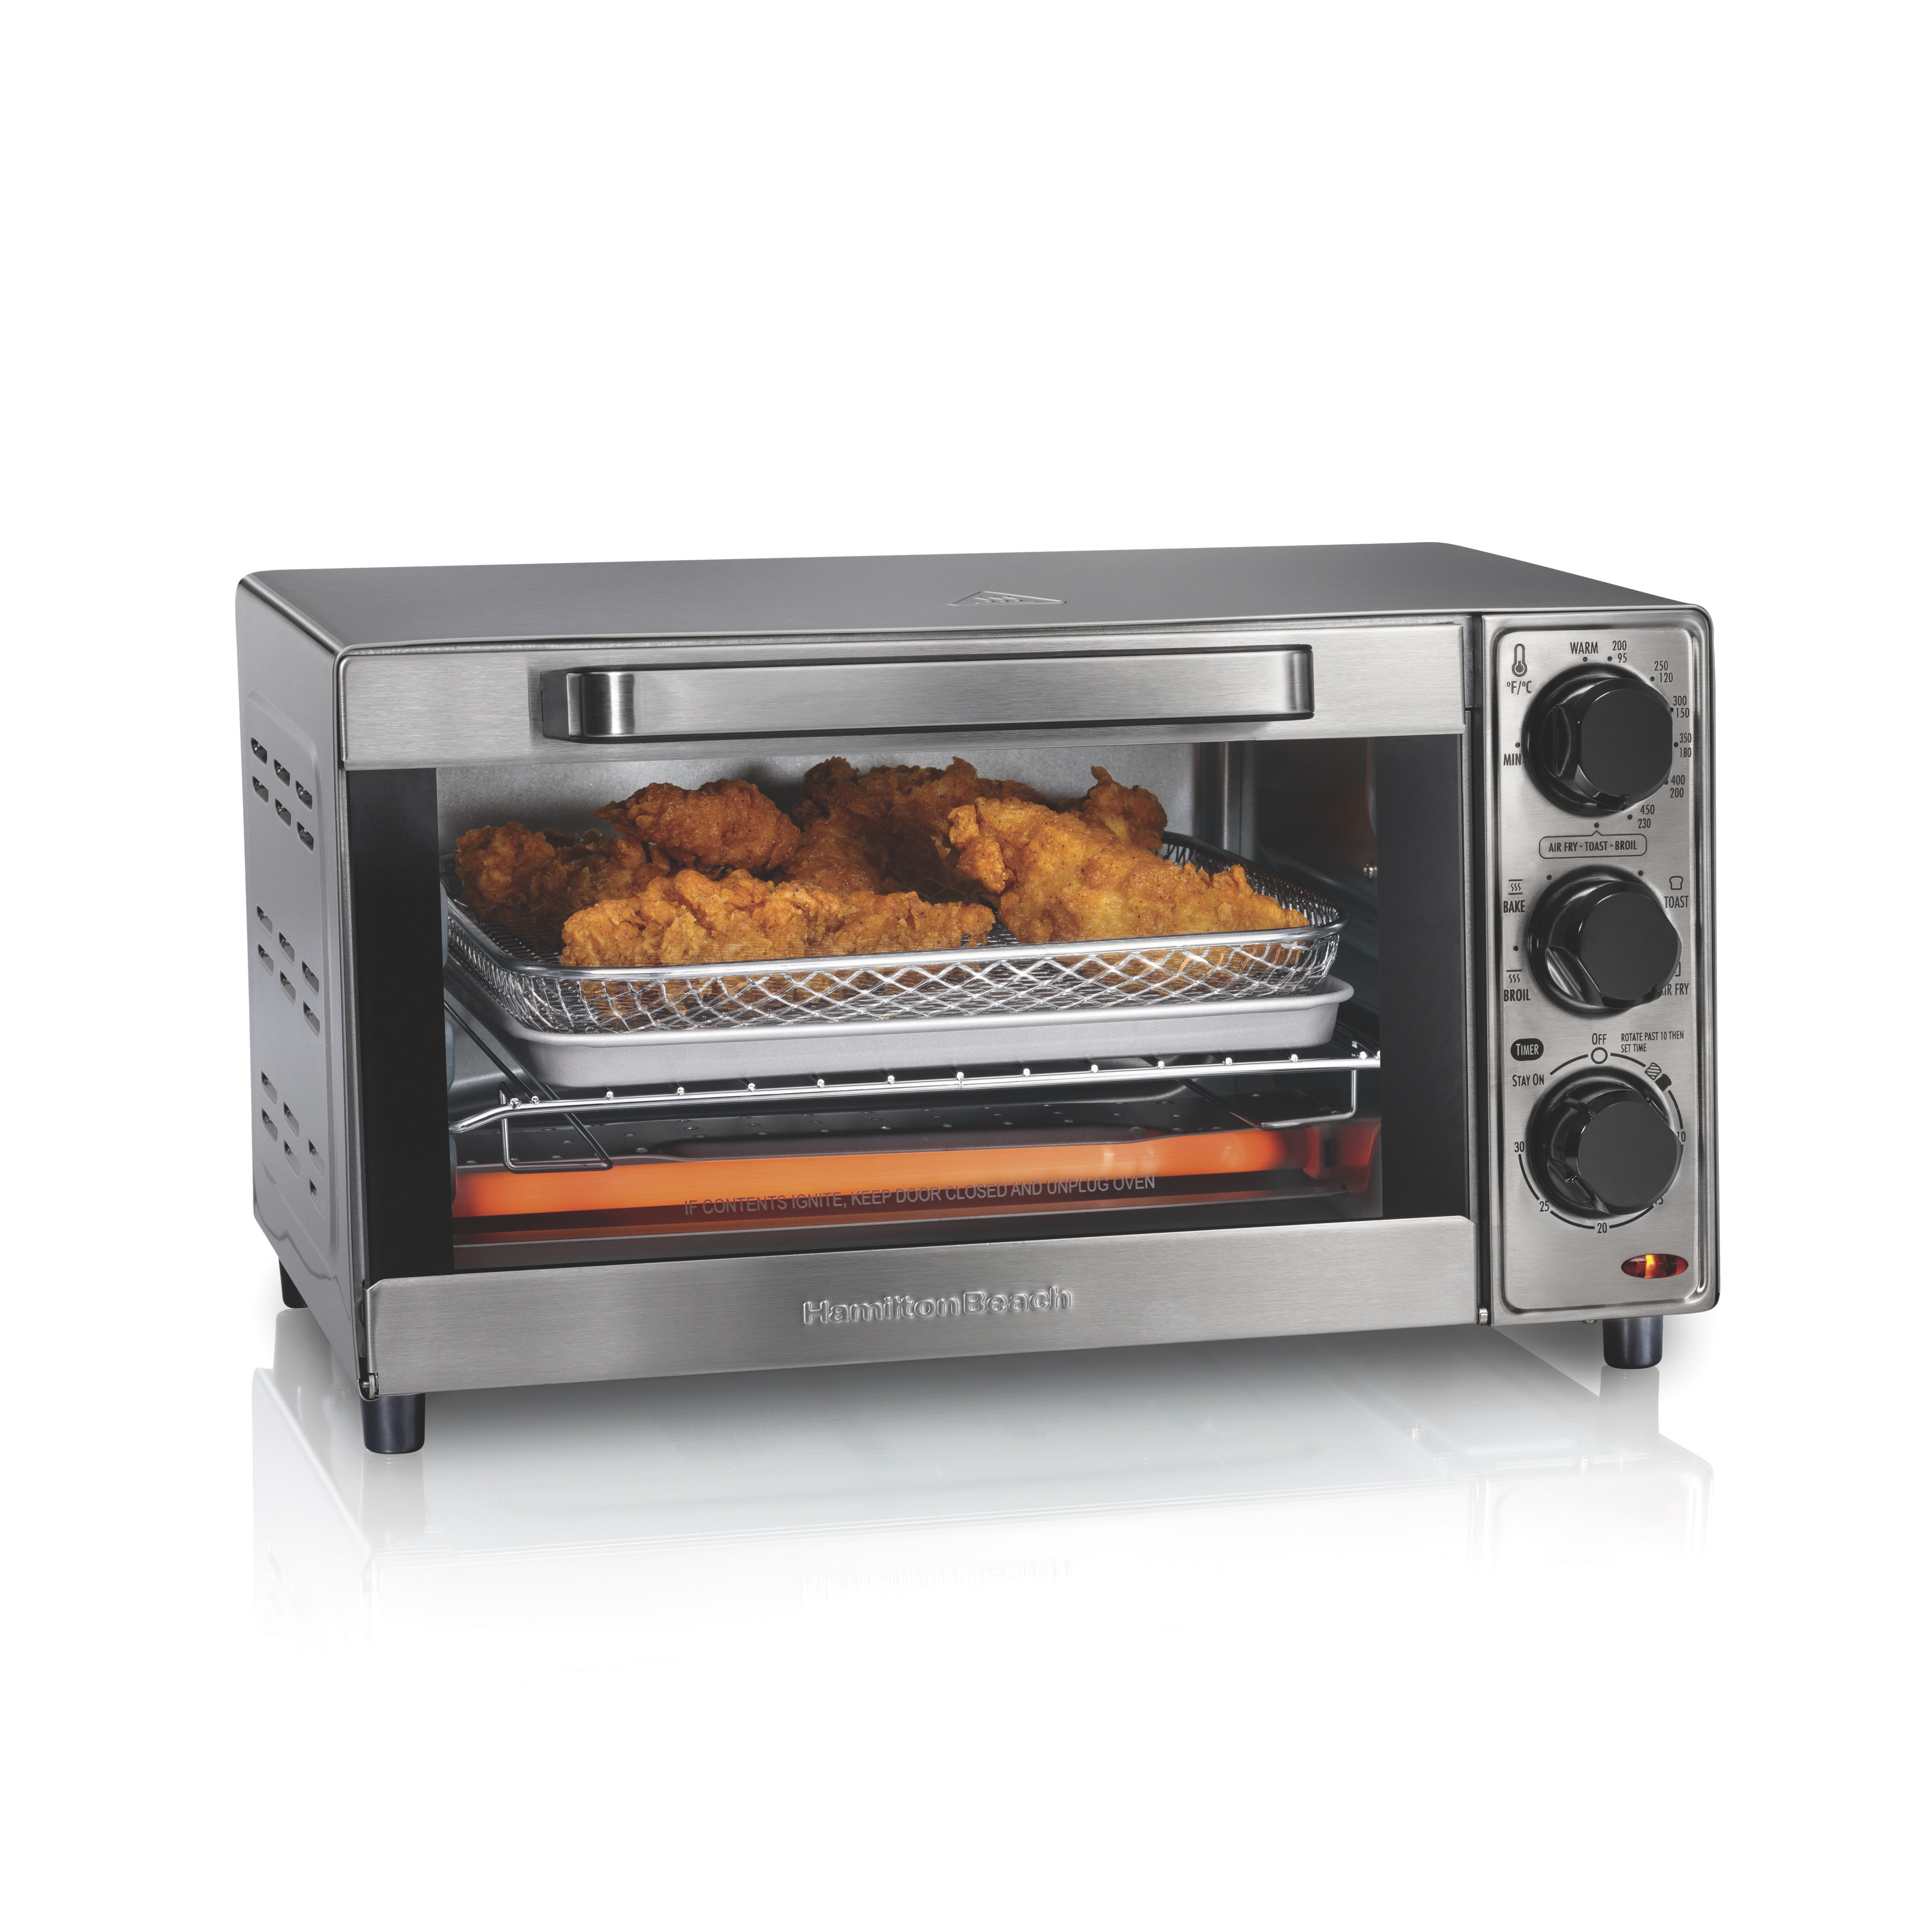 Hamilton Beach Air Fryer Toaster Oven w/ Quantum Air Fry